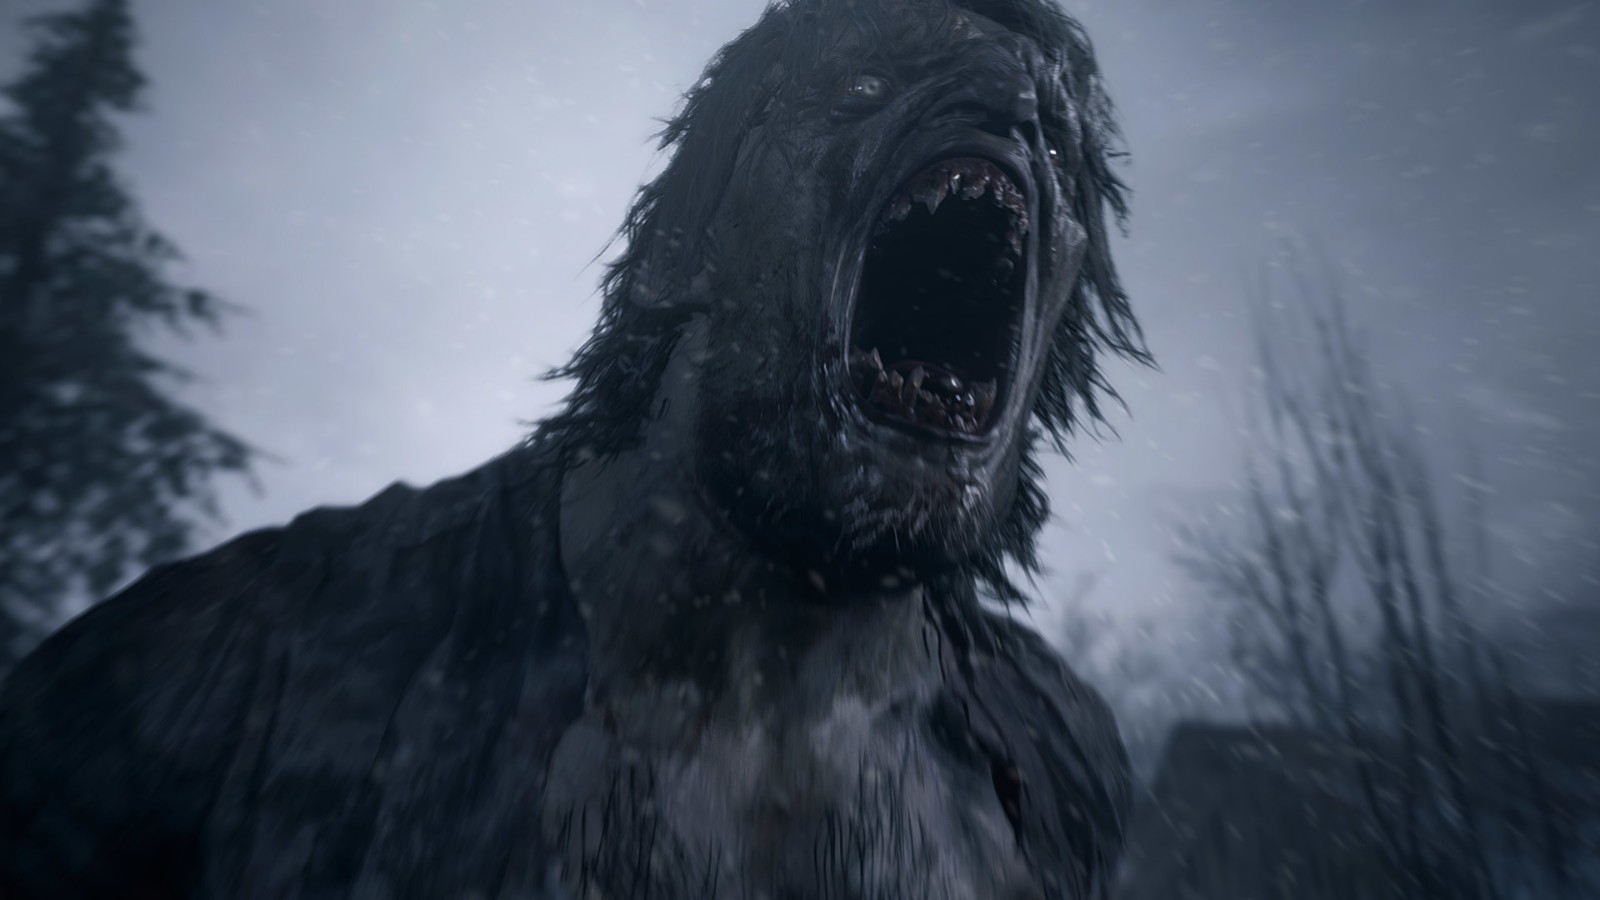 《惡靈古堡8》狼人介紹視頻 動作敏捷讓人防不勝防